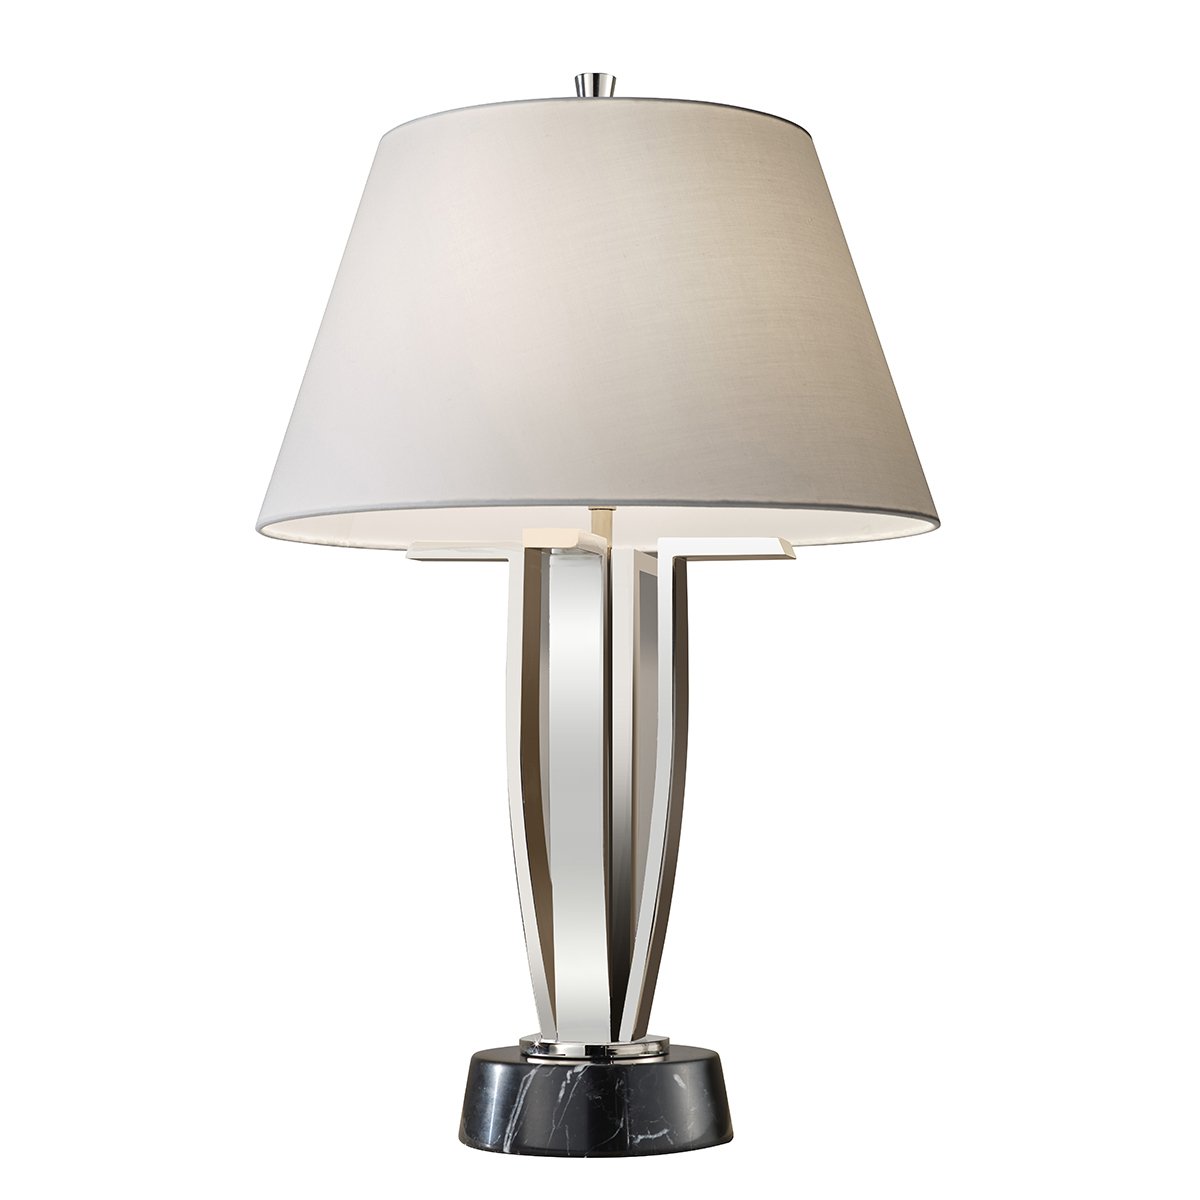 nickel poliert Shop Elstead Light online & im --> kaufen Leuchten Silvershore Lampen weiß Tischlampe Stoffschirm